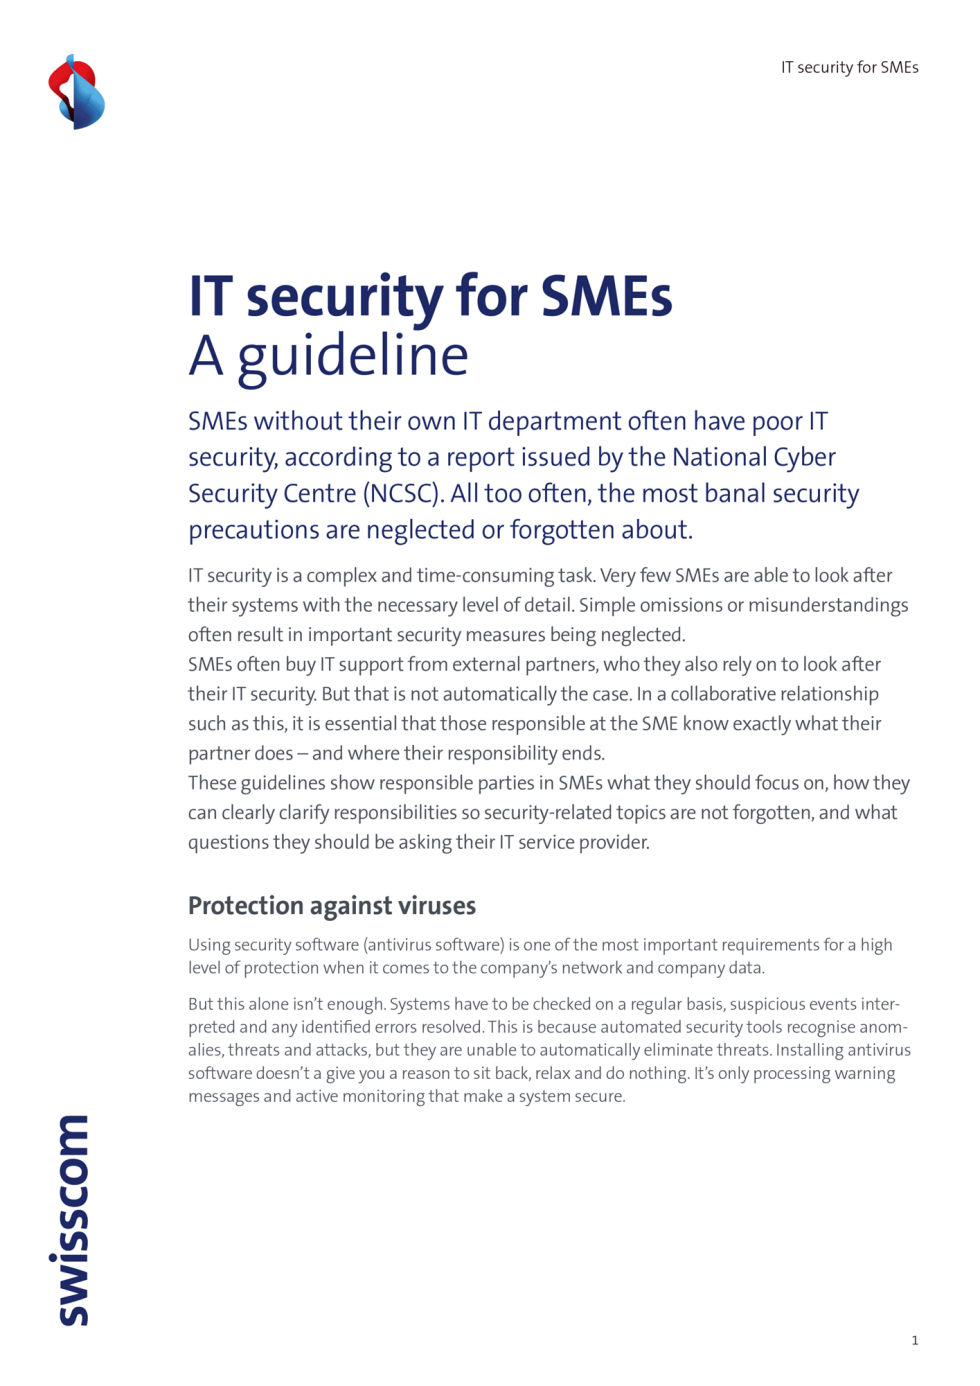 B2C-Swisscom-Guideline-IT-Security-SME-2020-ENG-v3.indd